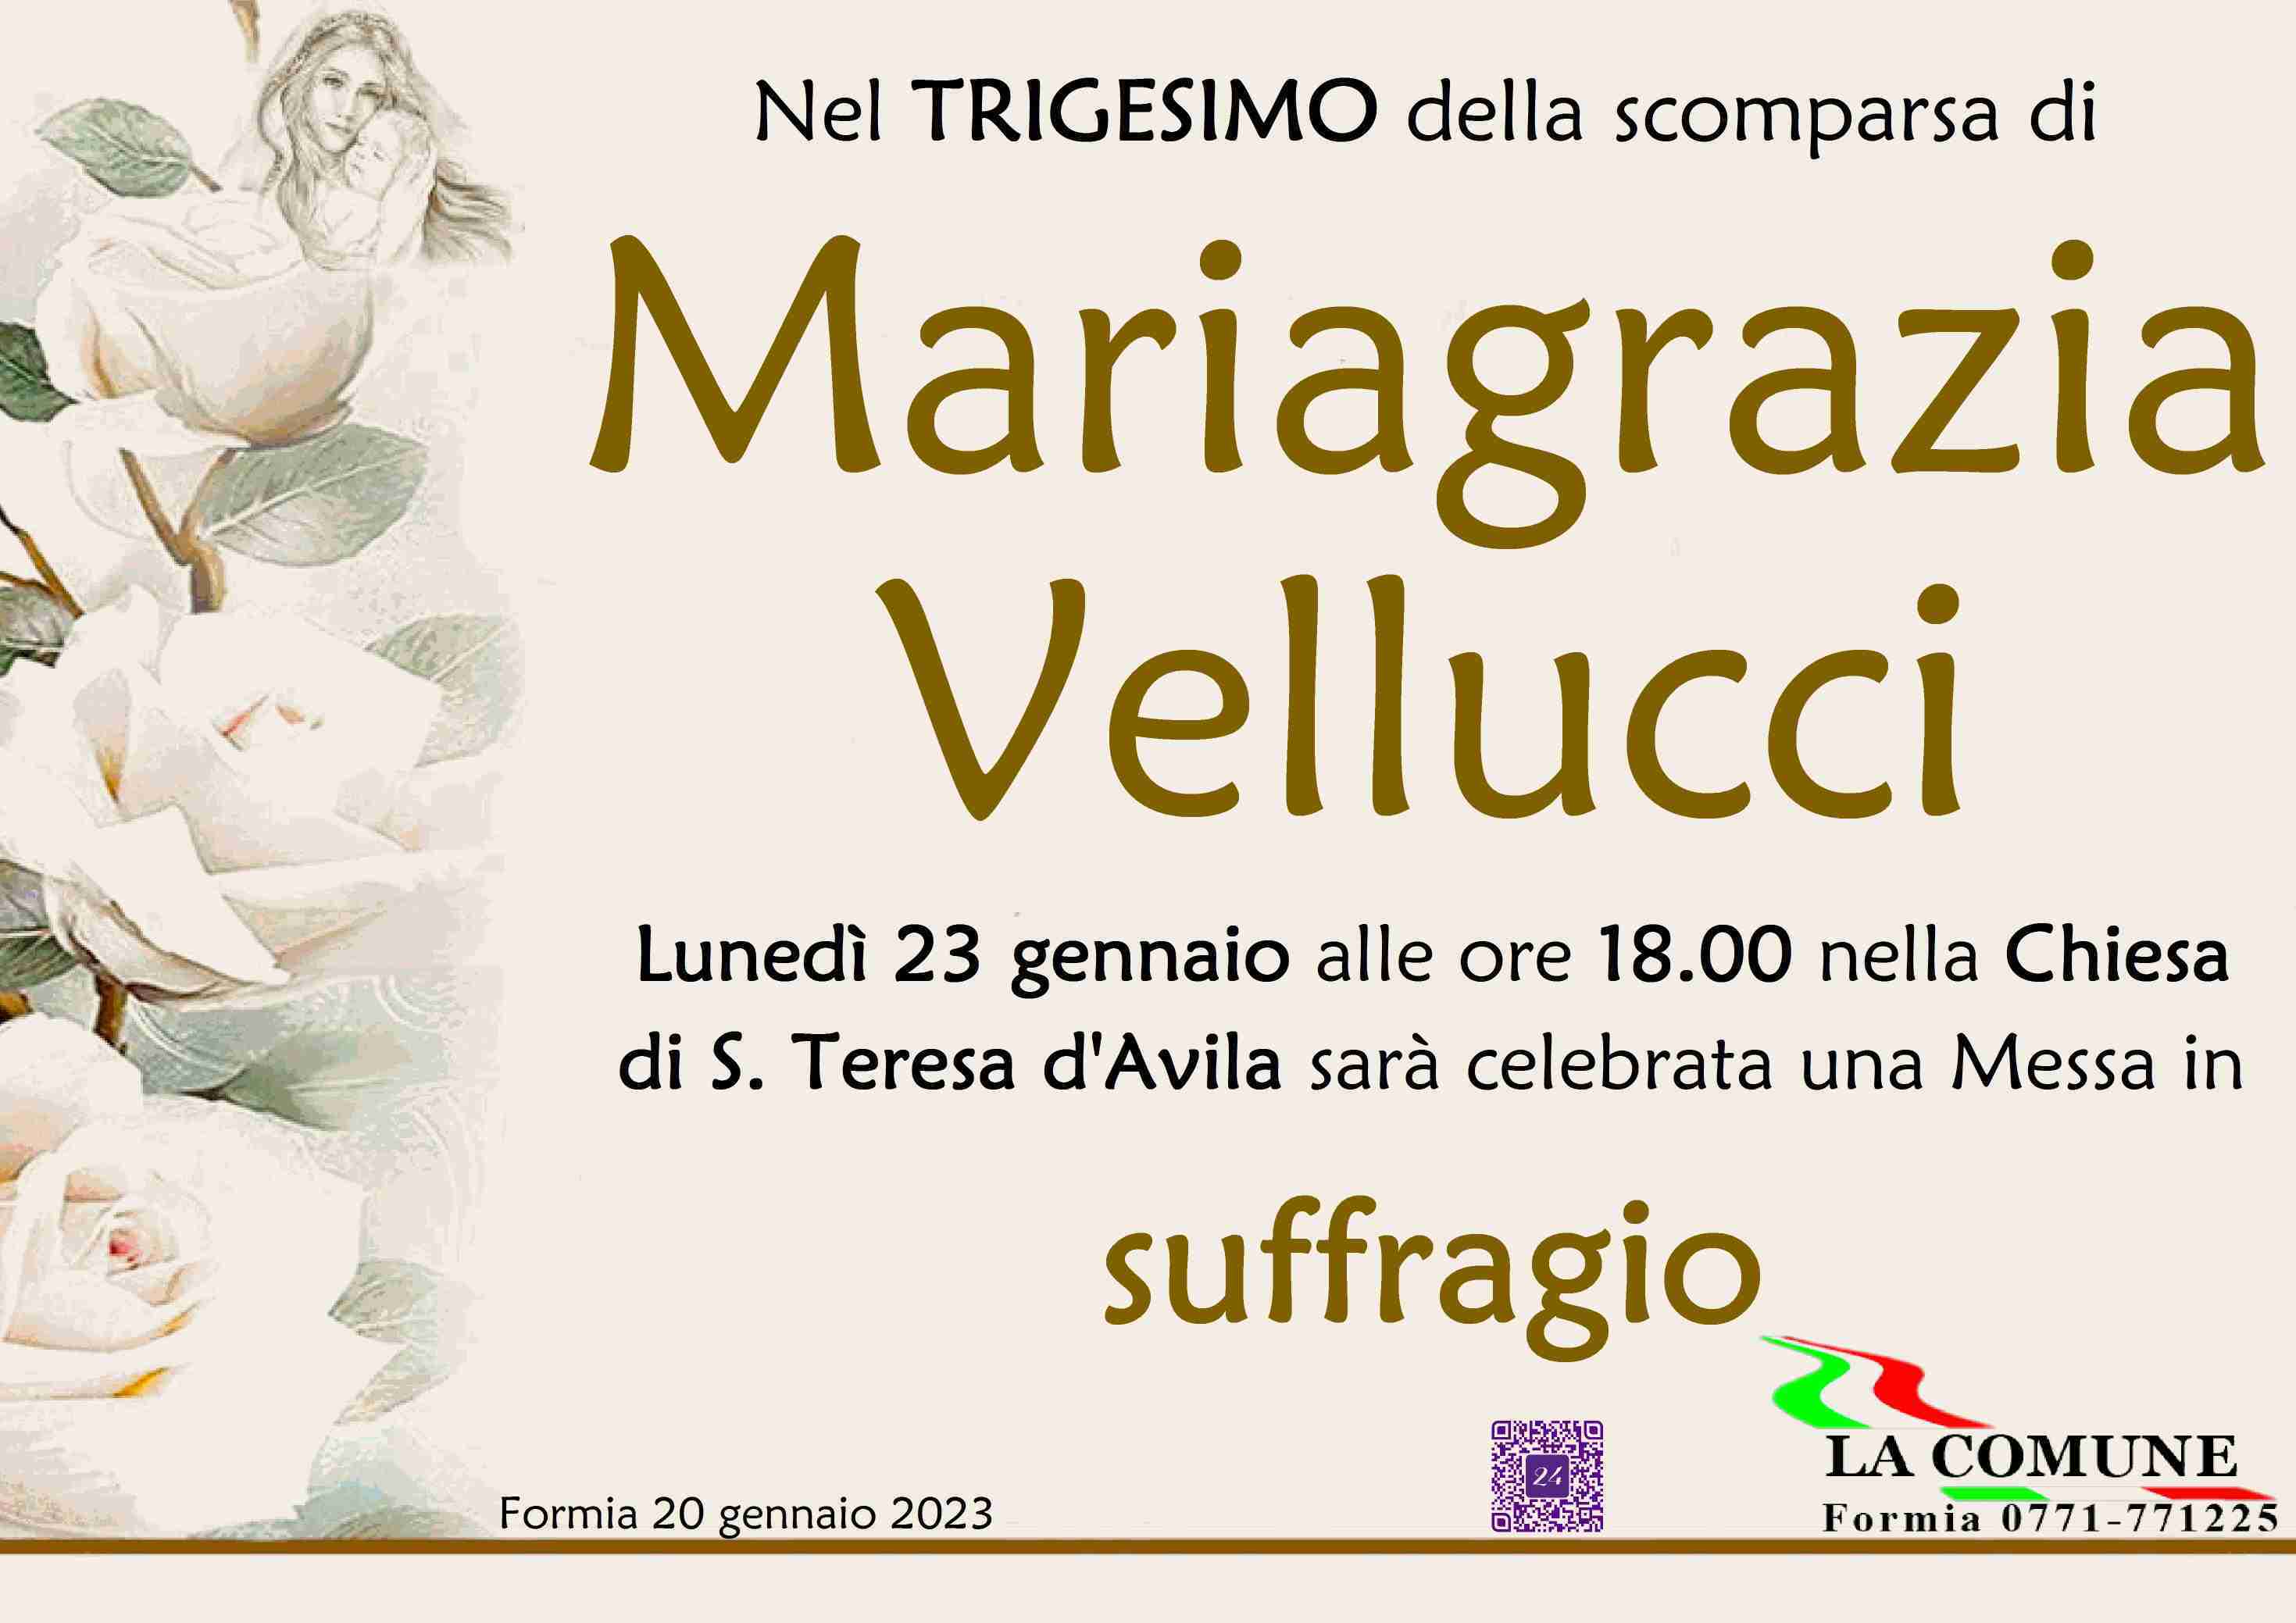 Mariagrazia Vellucci